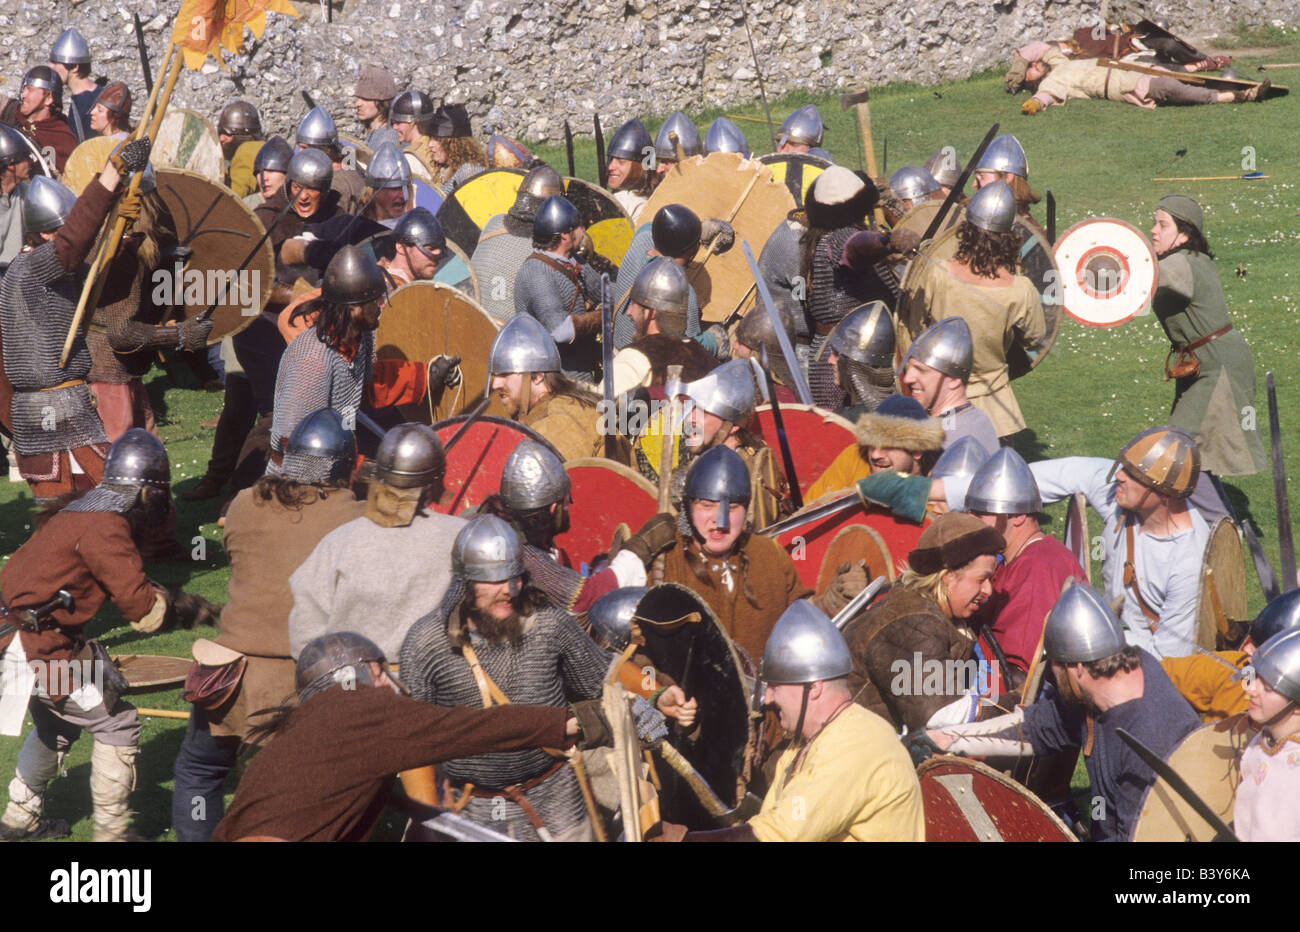 Sociedad nórdica Vikinga soldados Saxon escaramuza la recreación histórica batalla English Historia militar combates armas aquellas Foto de stock